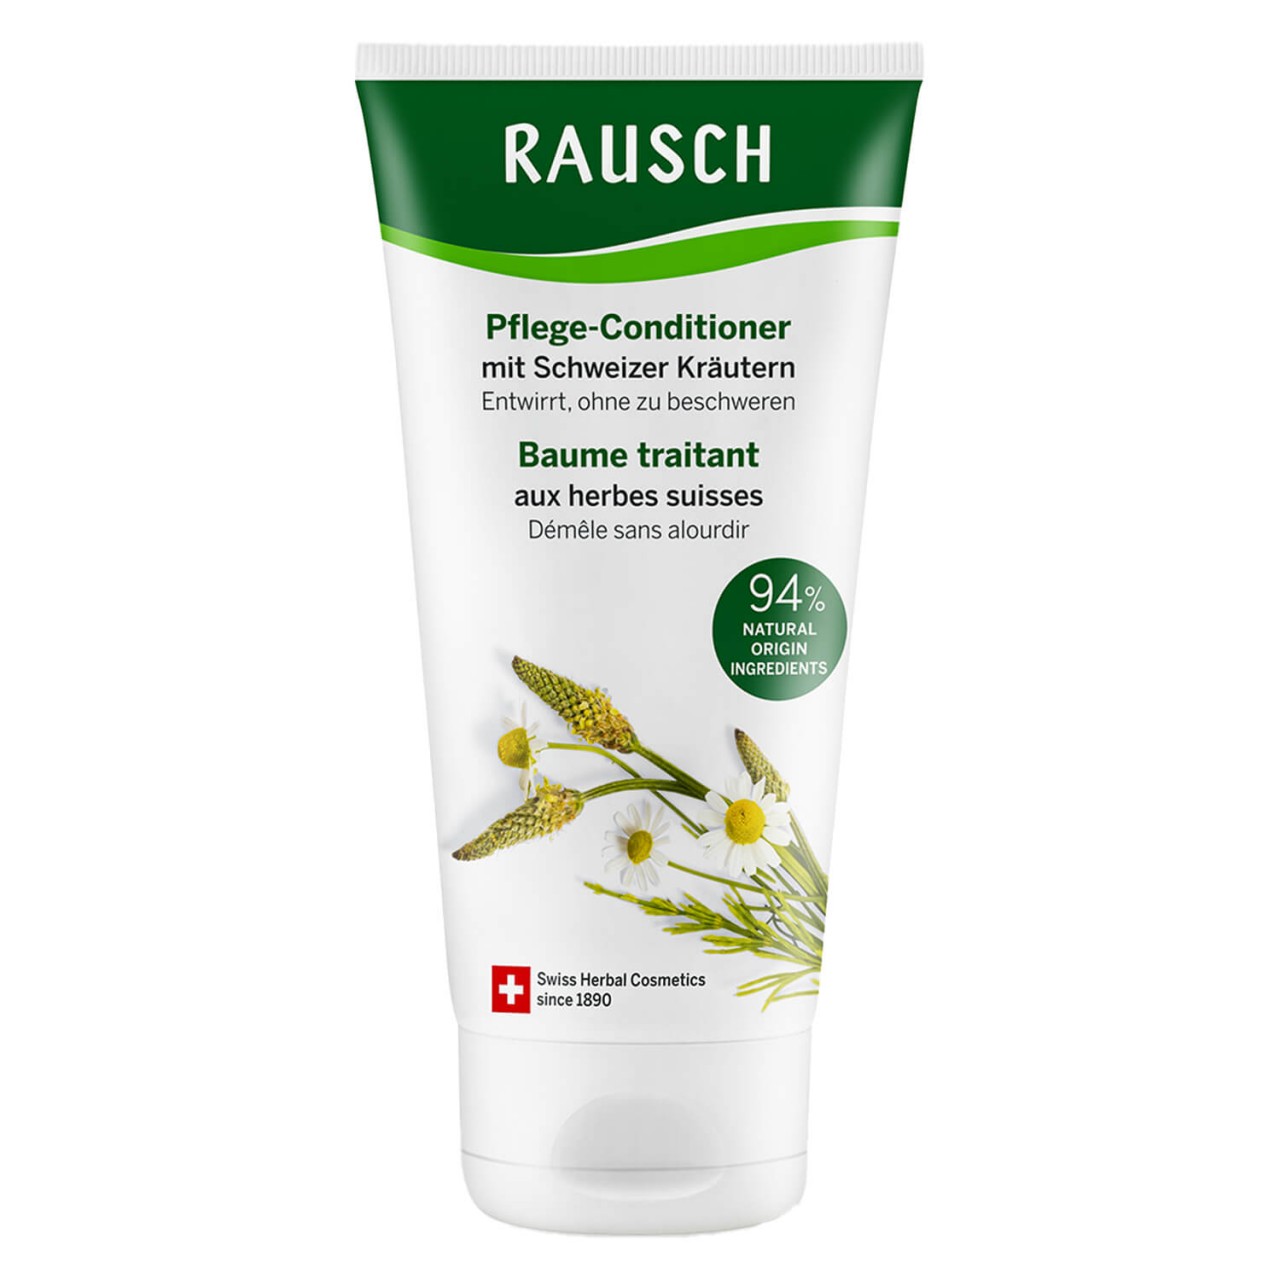 Schweizer Kräuter - Pflege-Conditioner von RAUSCH